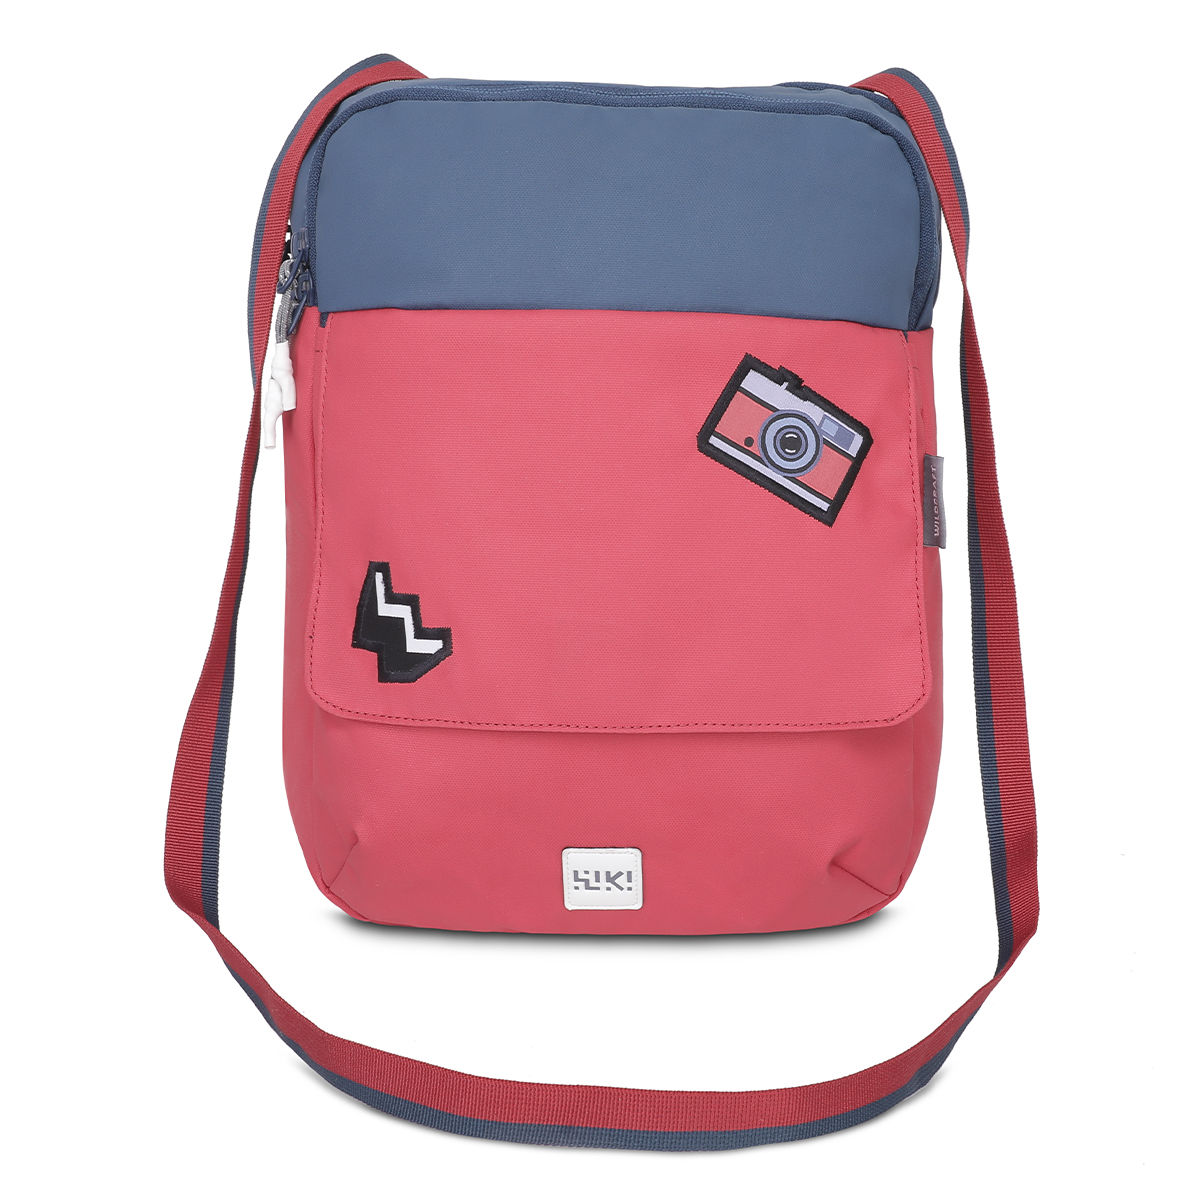 Buy Vivid 15 Inch Laptop Backpack Teal Online | Wildcraft